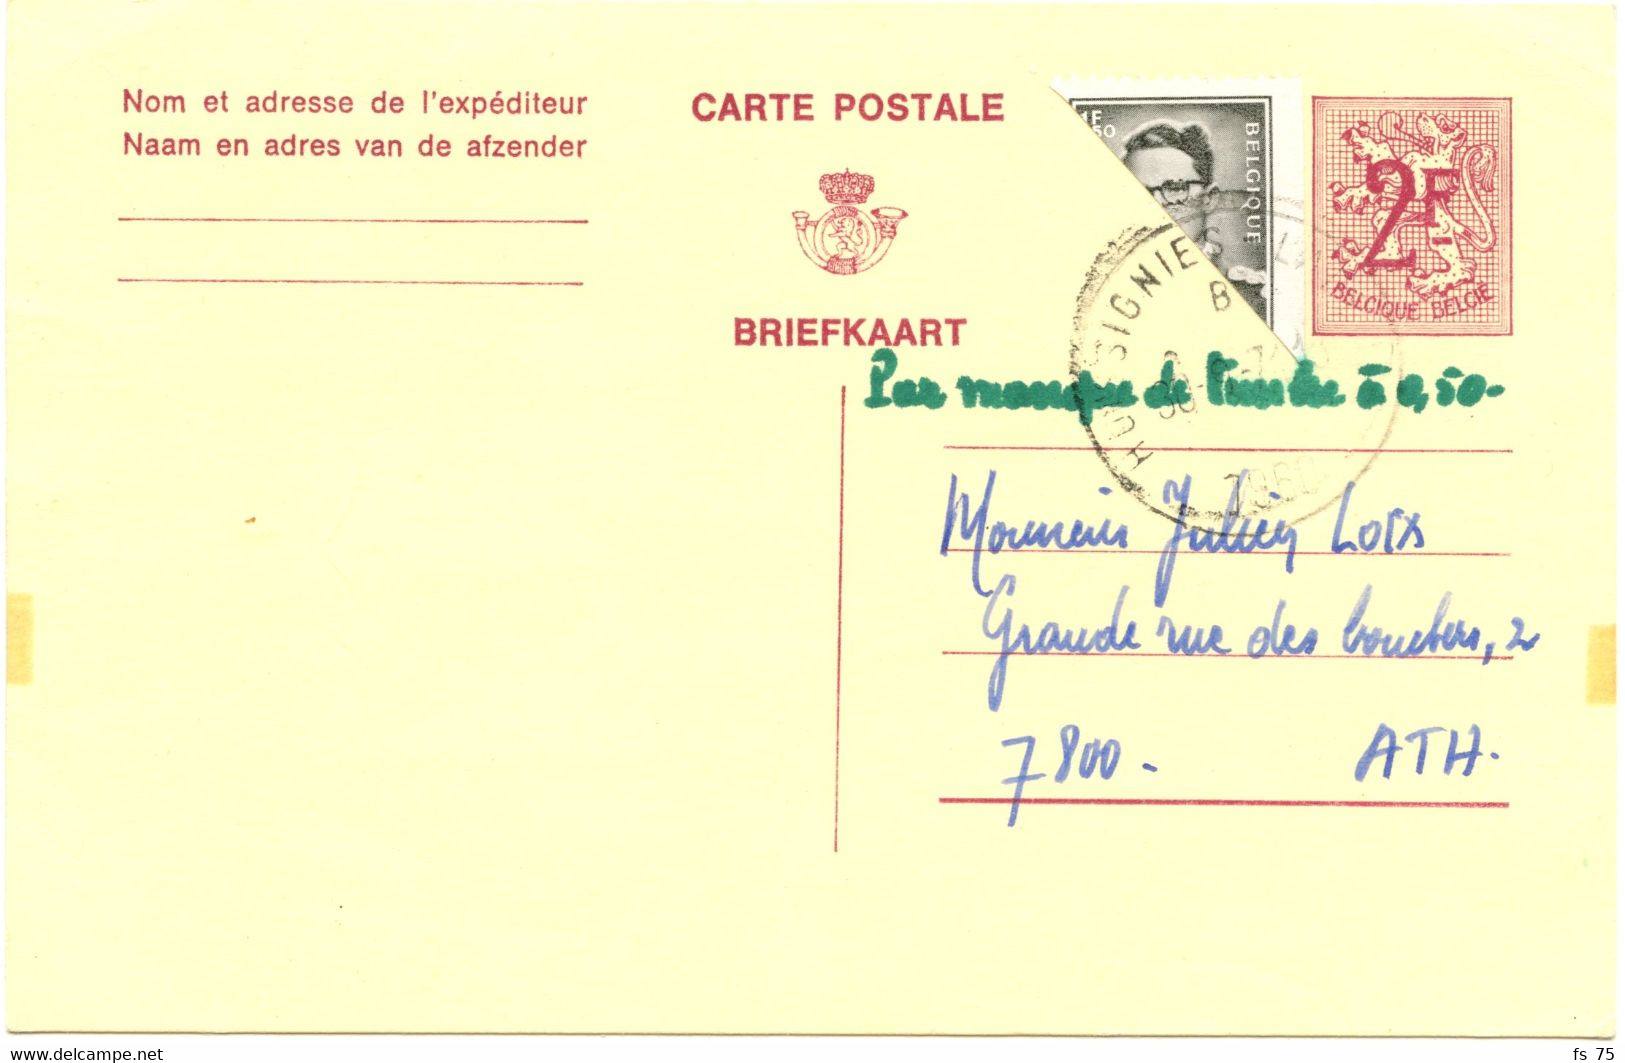 BELGIQUE - COB 1561 1F50 GRIS ROI BAUDOUIN DEMI TIMBRE SUR ENTIER CARTE POSTALE 2F LION HERALDIQUE D'HOUSIGNIES, 1971 - Covers & Documents